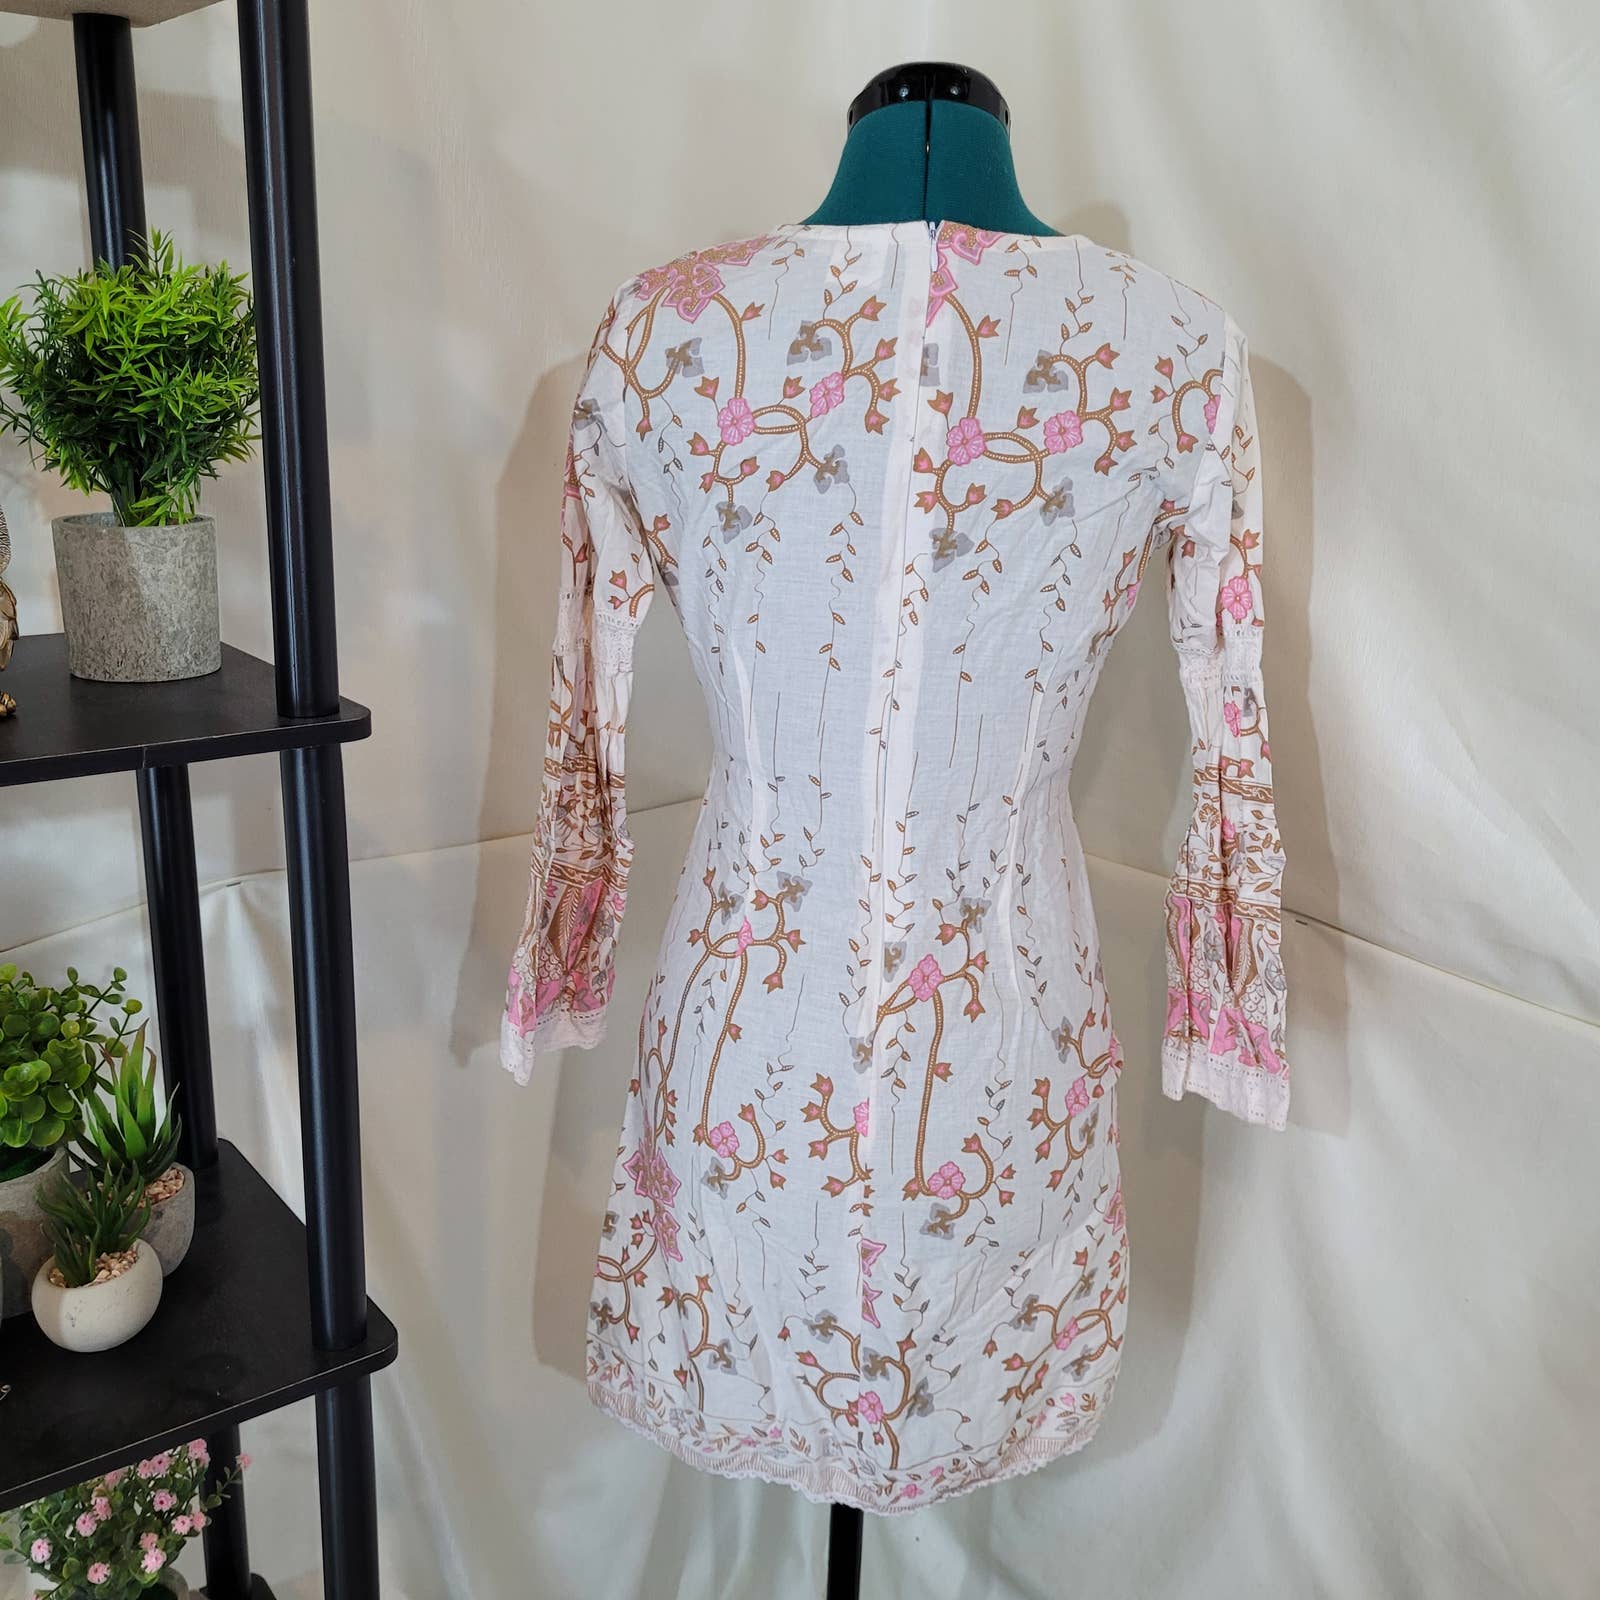 Sambar Paisley Boho Cottagecore Dress with Lace Crochet Accent - Size SmallMarkita's ClosetSambar